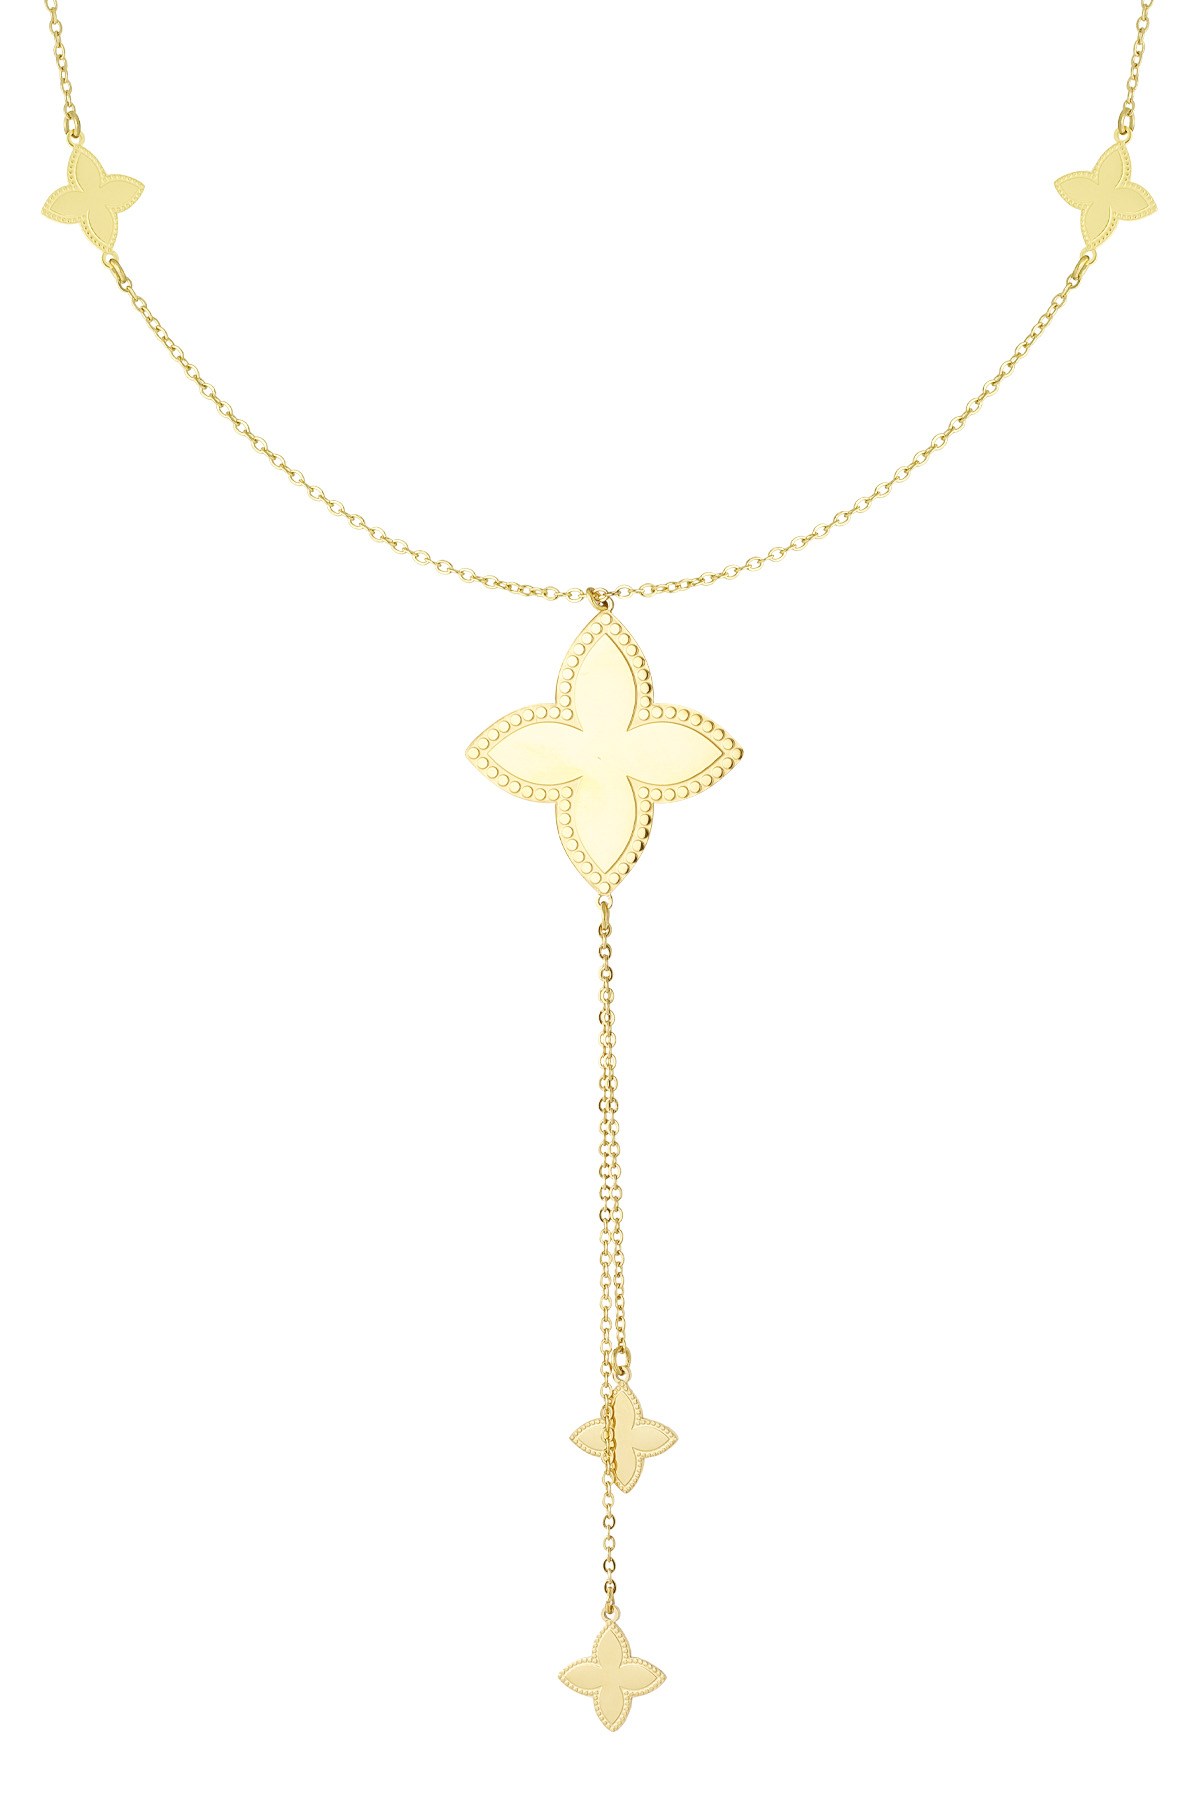 Lange Halskette mit verschiedenen Kleeblatt-Anhängern – Gold 